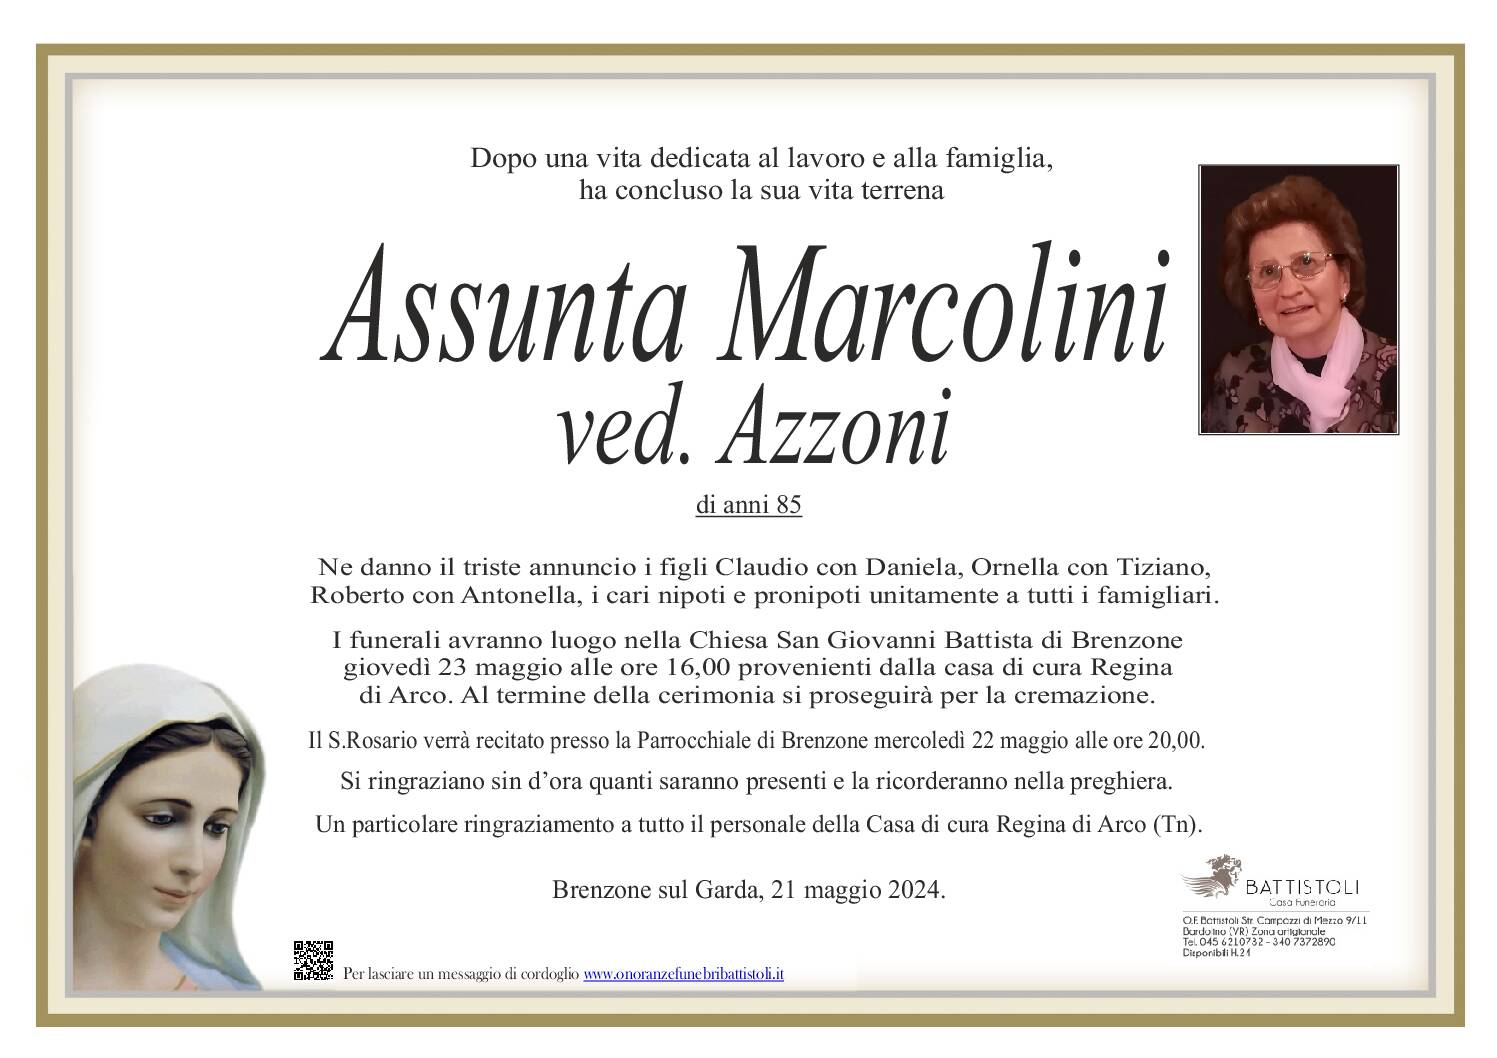 Marcolini Assunta